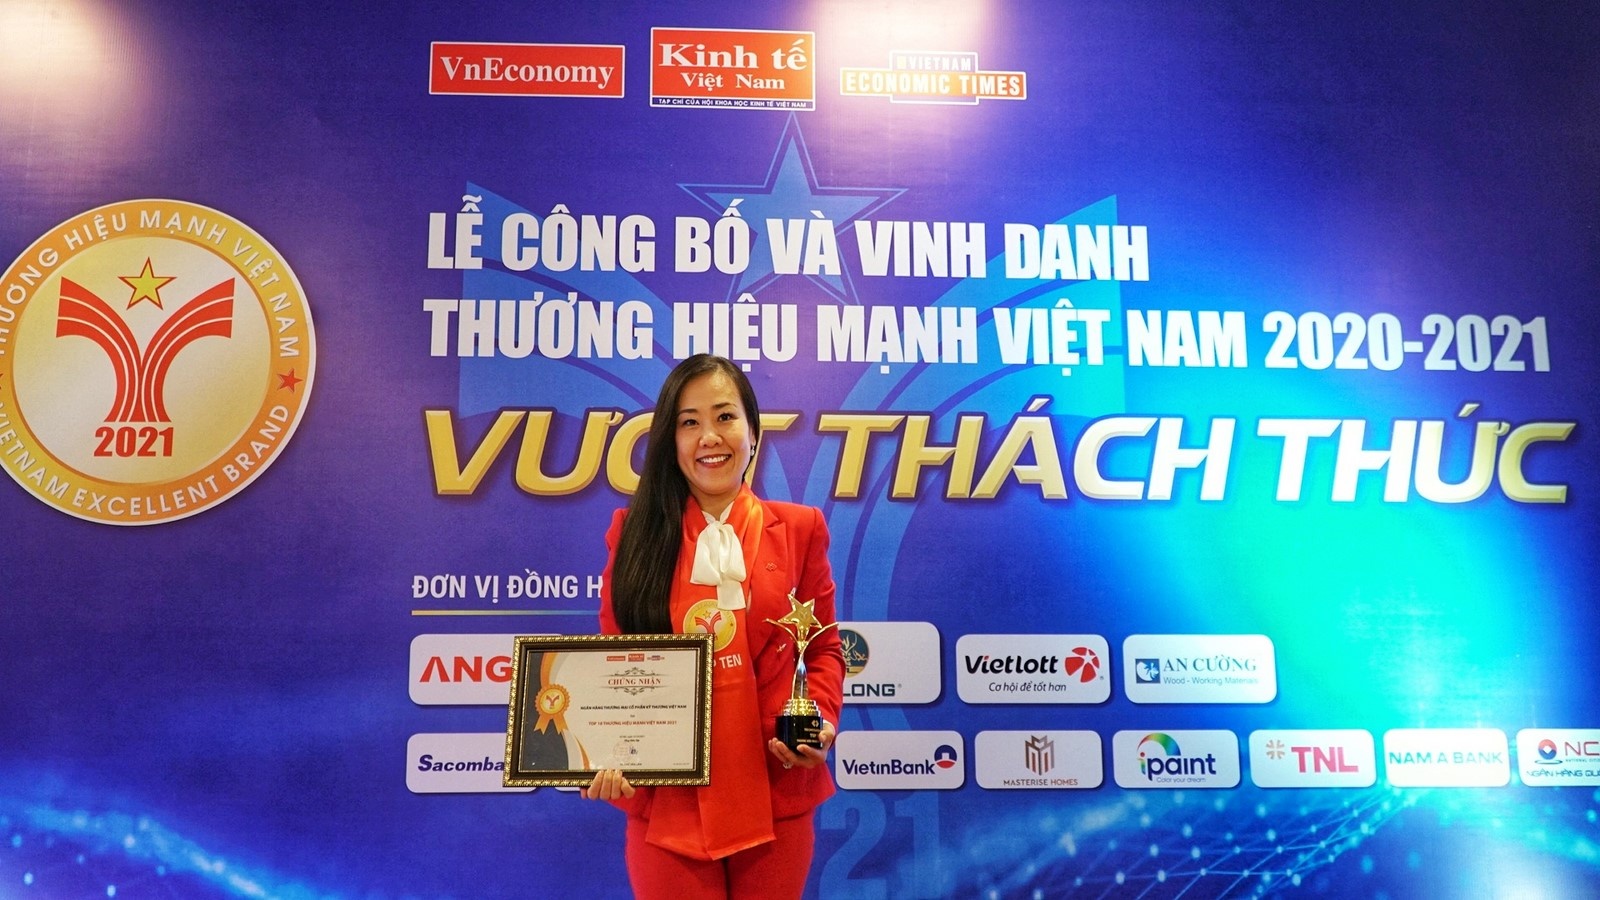 techcombank top 10 thuong hieu manh viet nam 2021